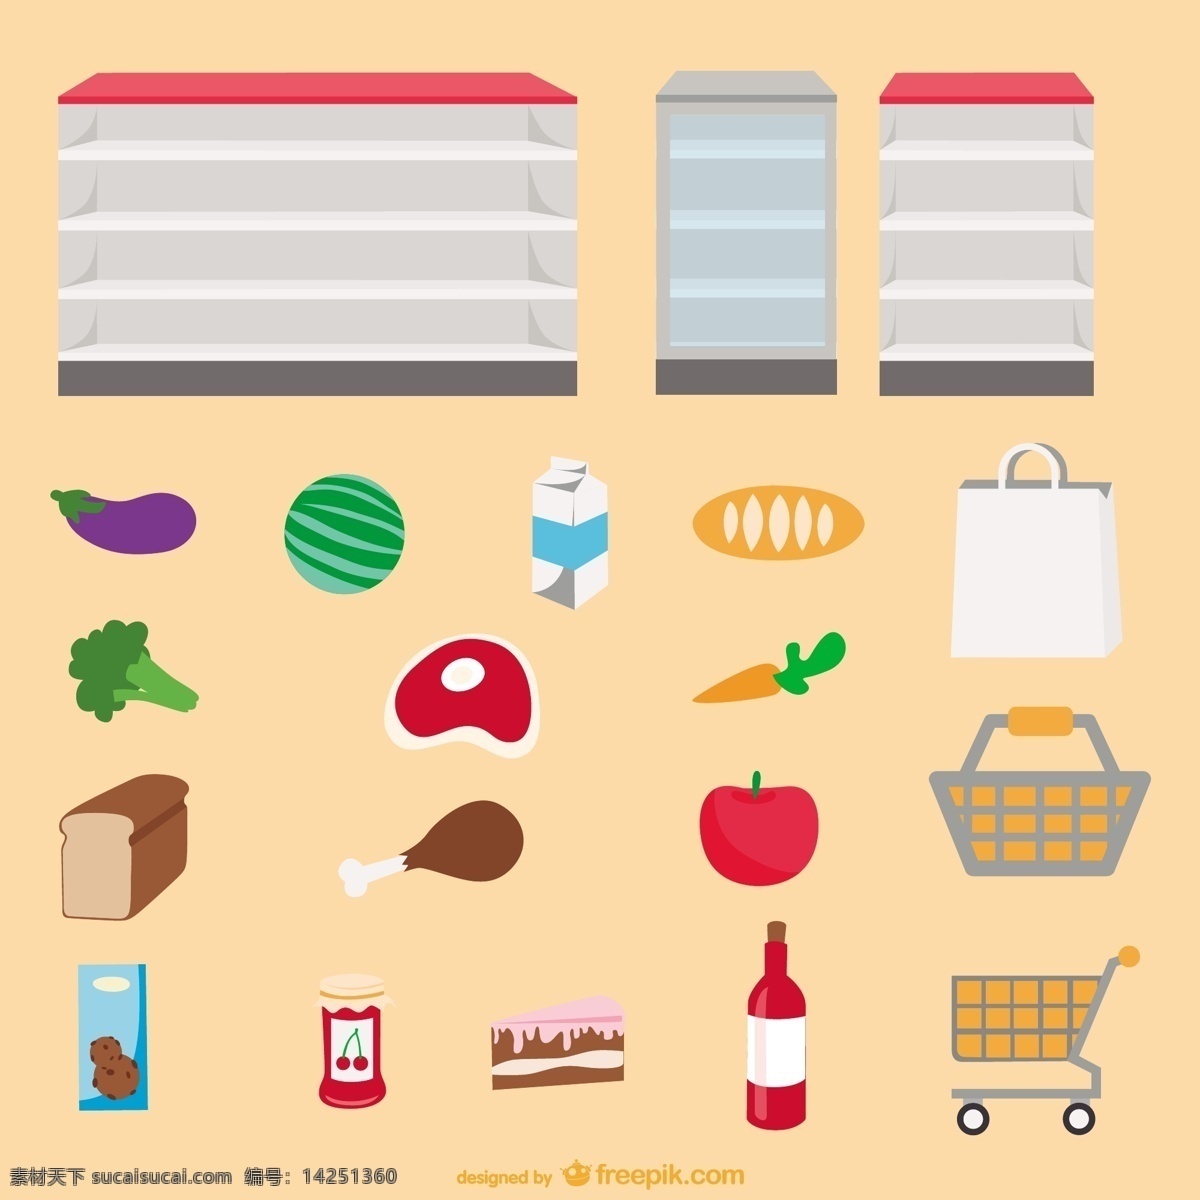 超市货架 食物 矢量 超市 购物车 购物袋 胡萝卜 货架 面包 牛奶 苹果 矢量图 蔬菜 水果 其他矢量图